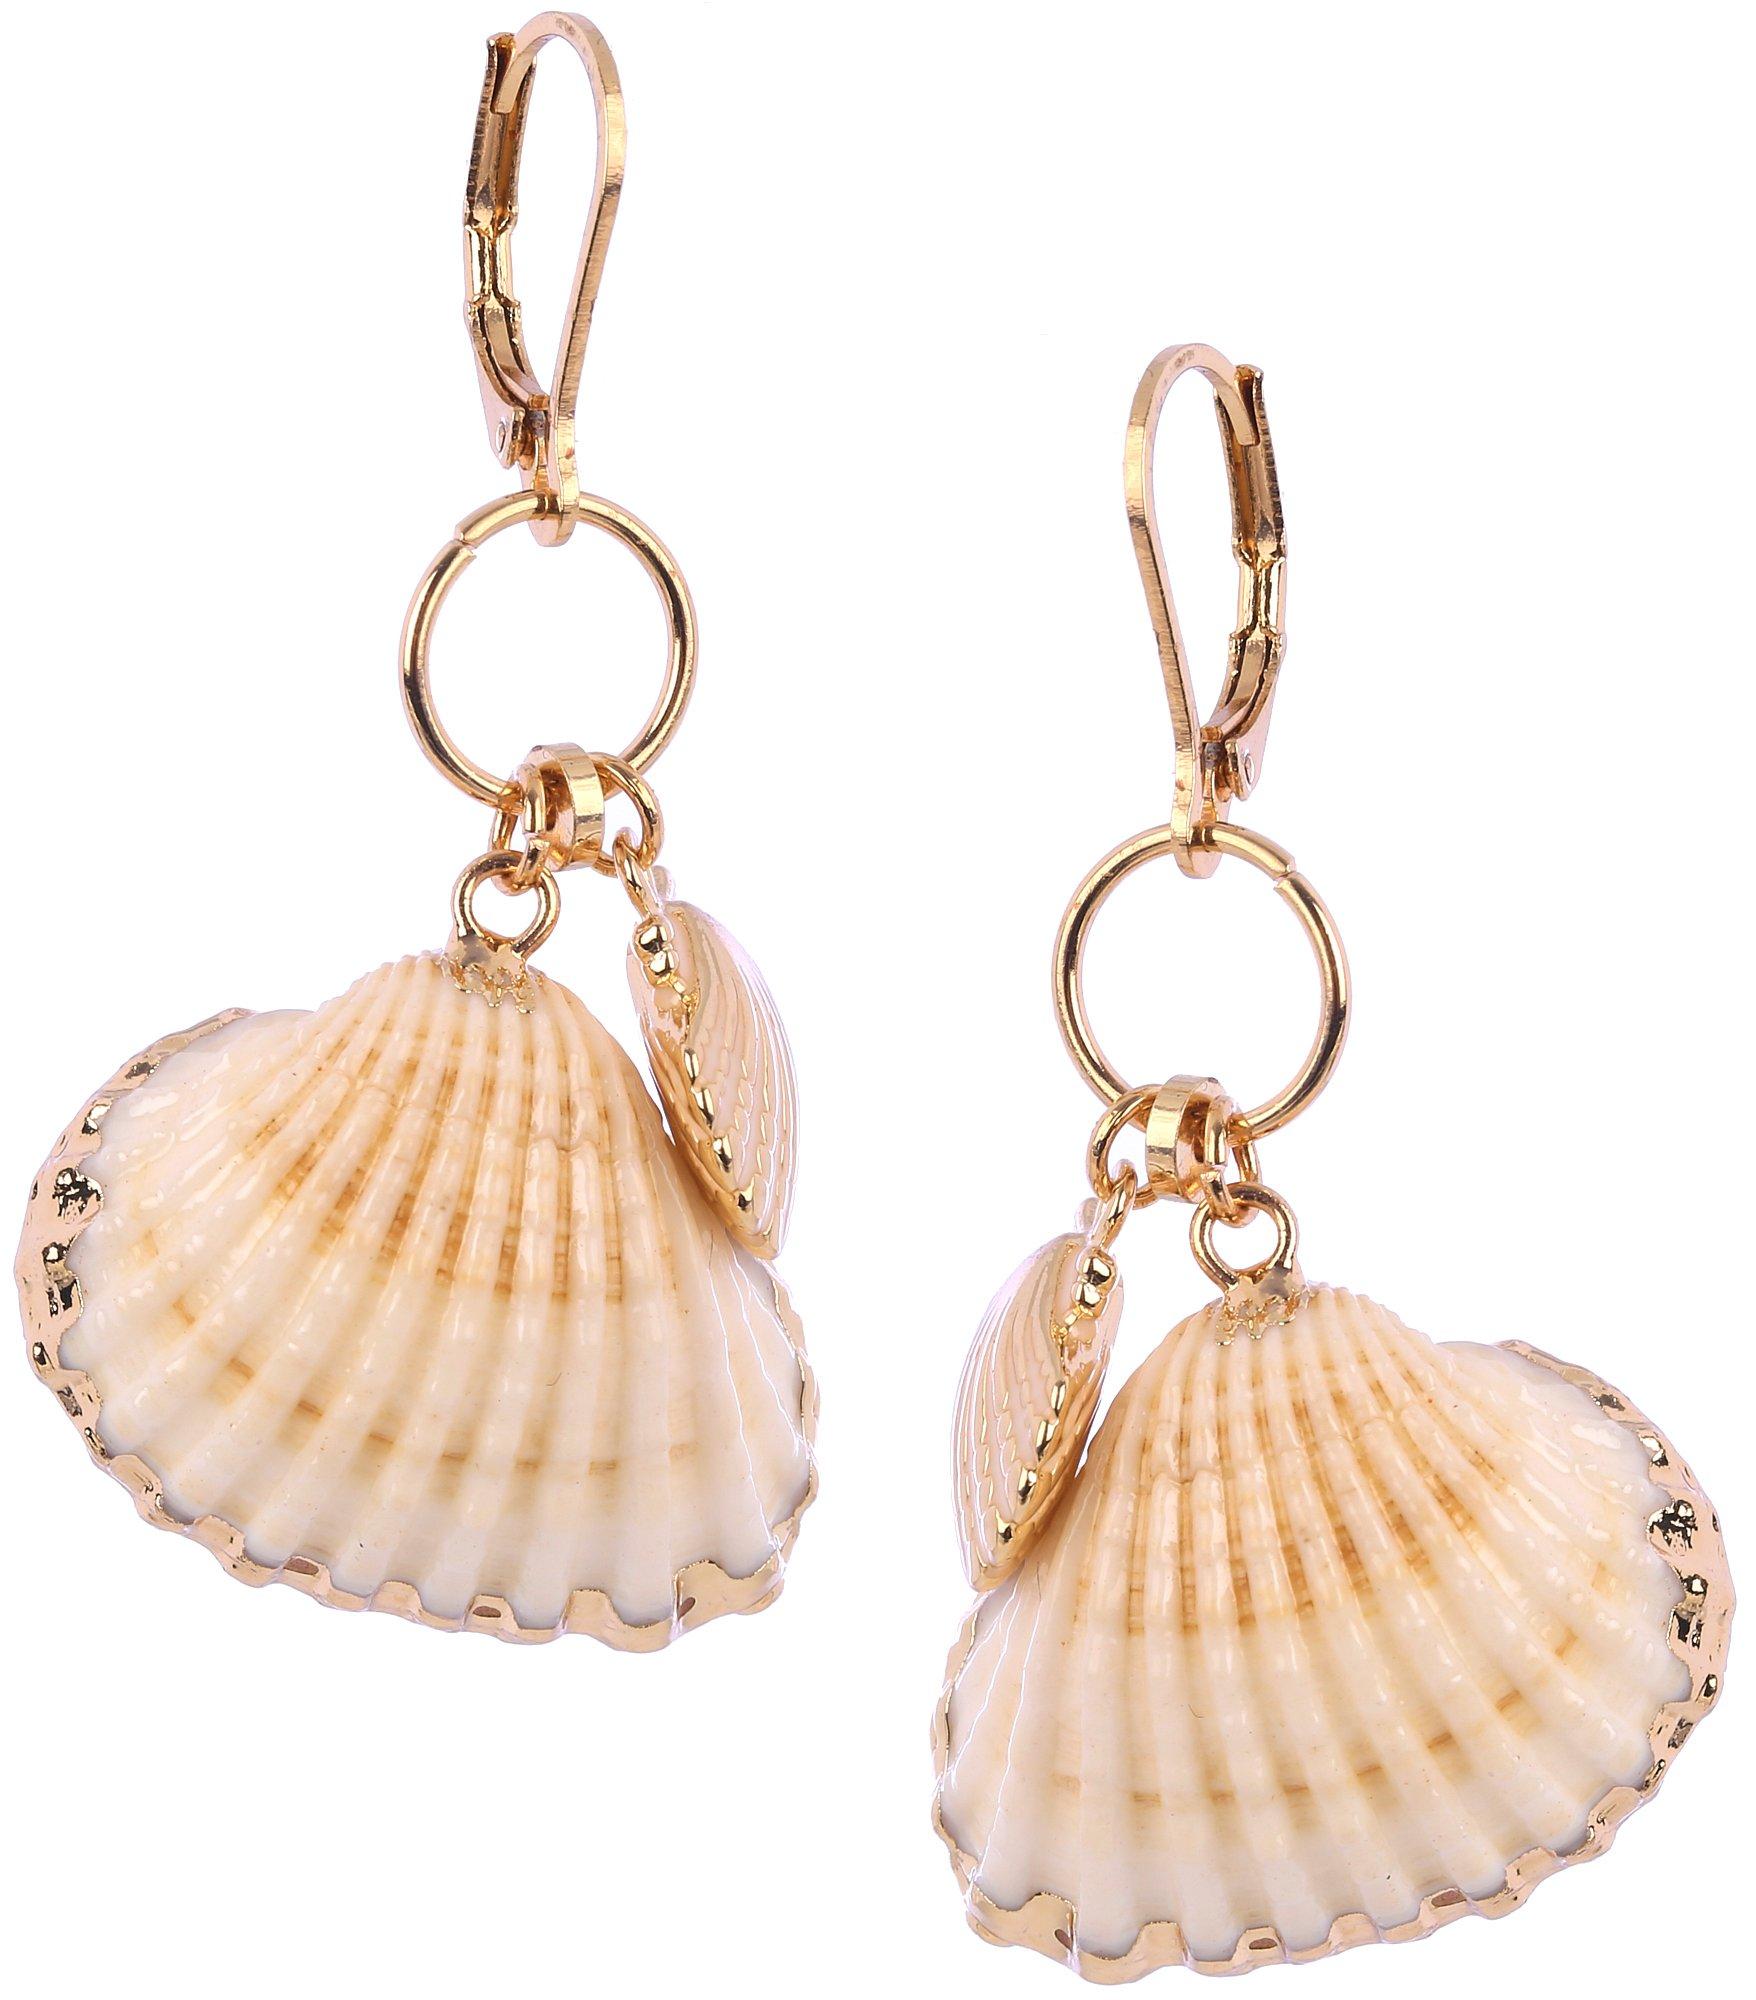 2 In. Shell Dangle Earrings